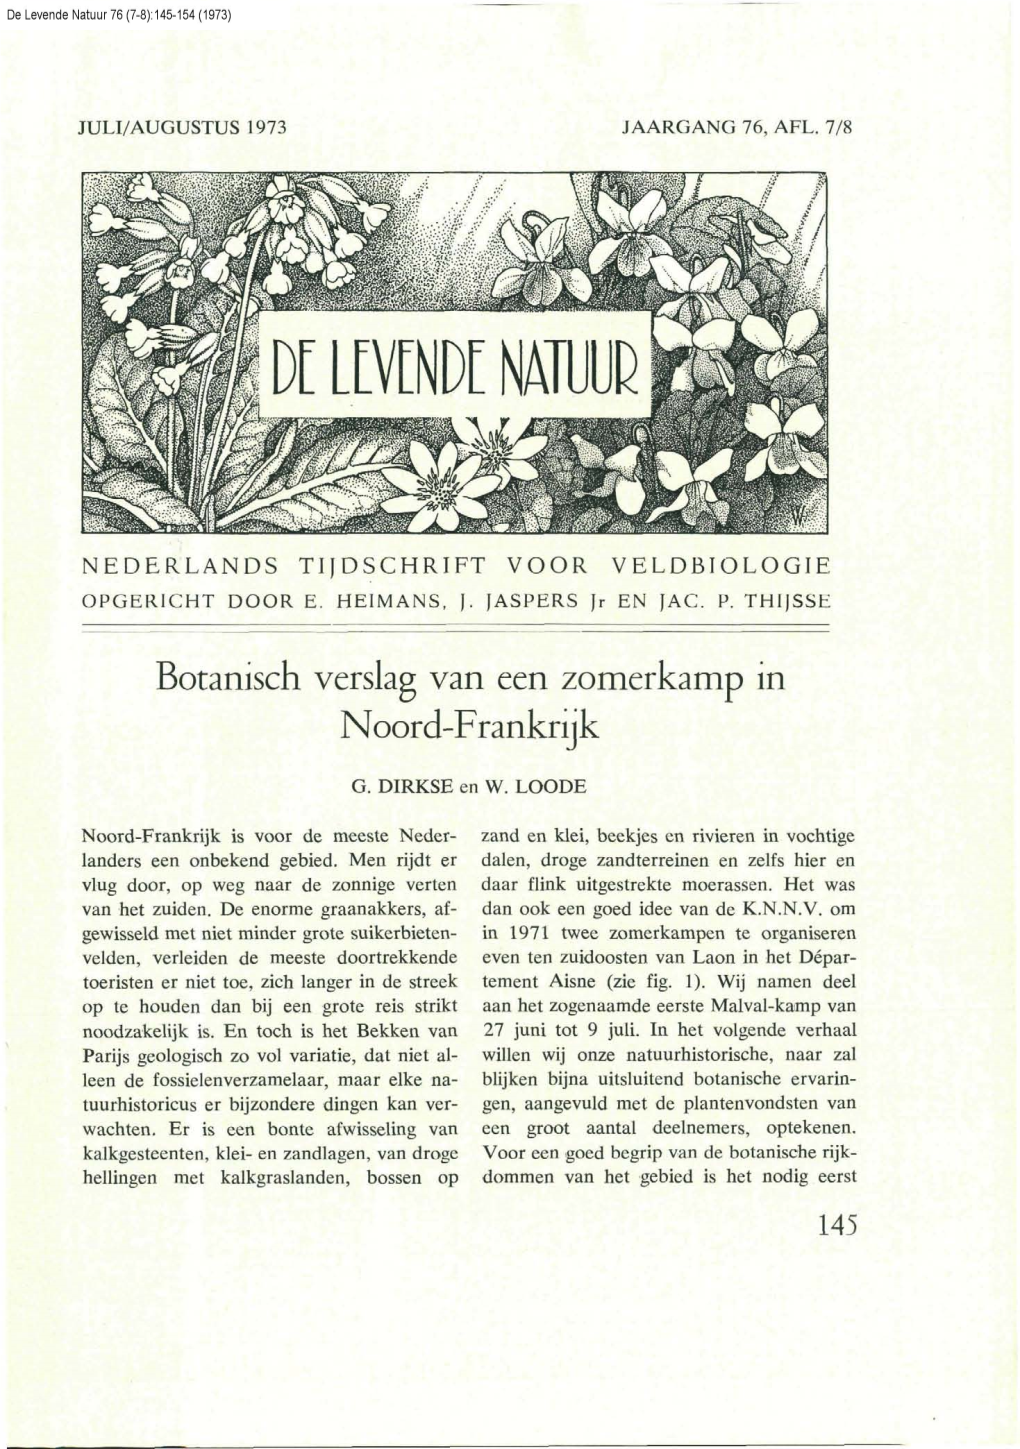 Dirkse, G. & W. Loode (1973) Botanisch Verslag Van Een Zomerkamp in Noord-Frankrijk. DLN 76: 145-154